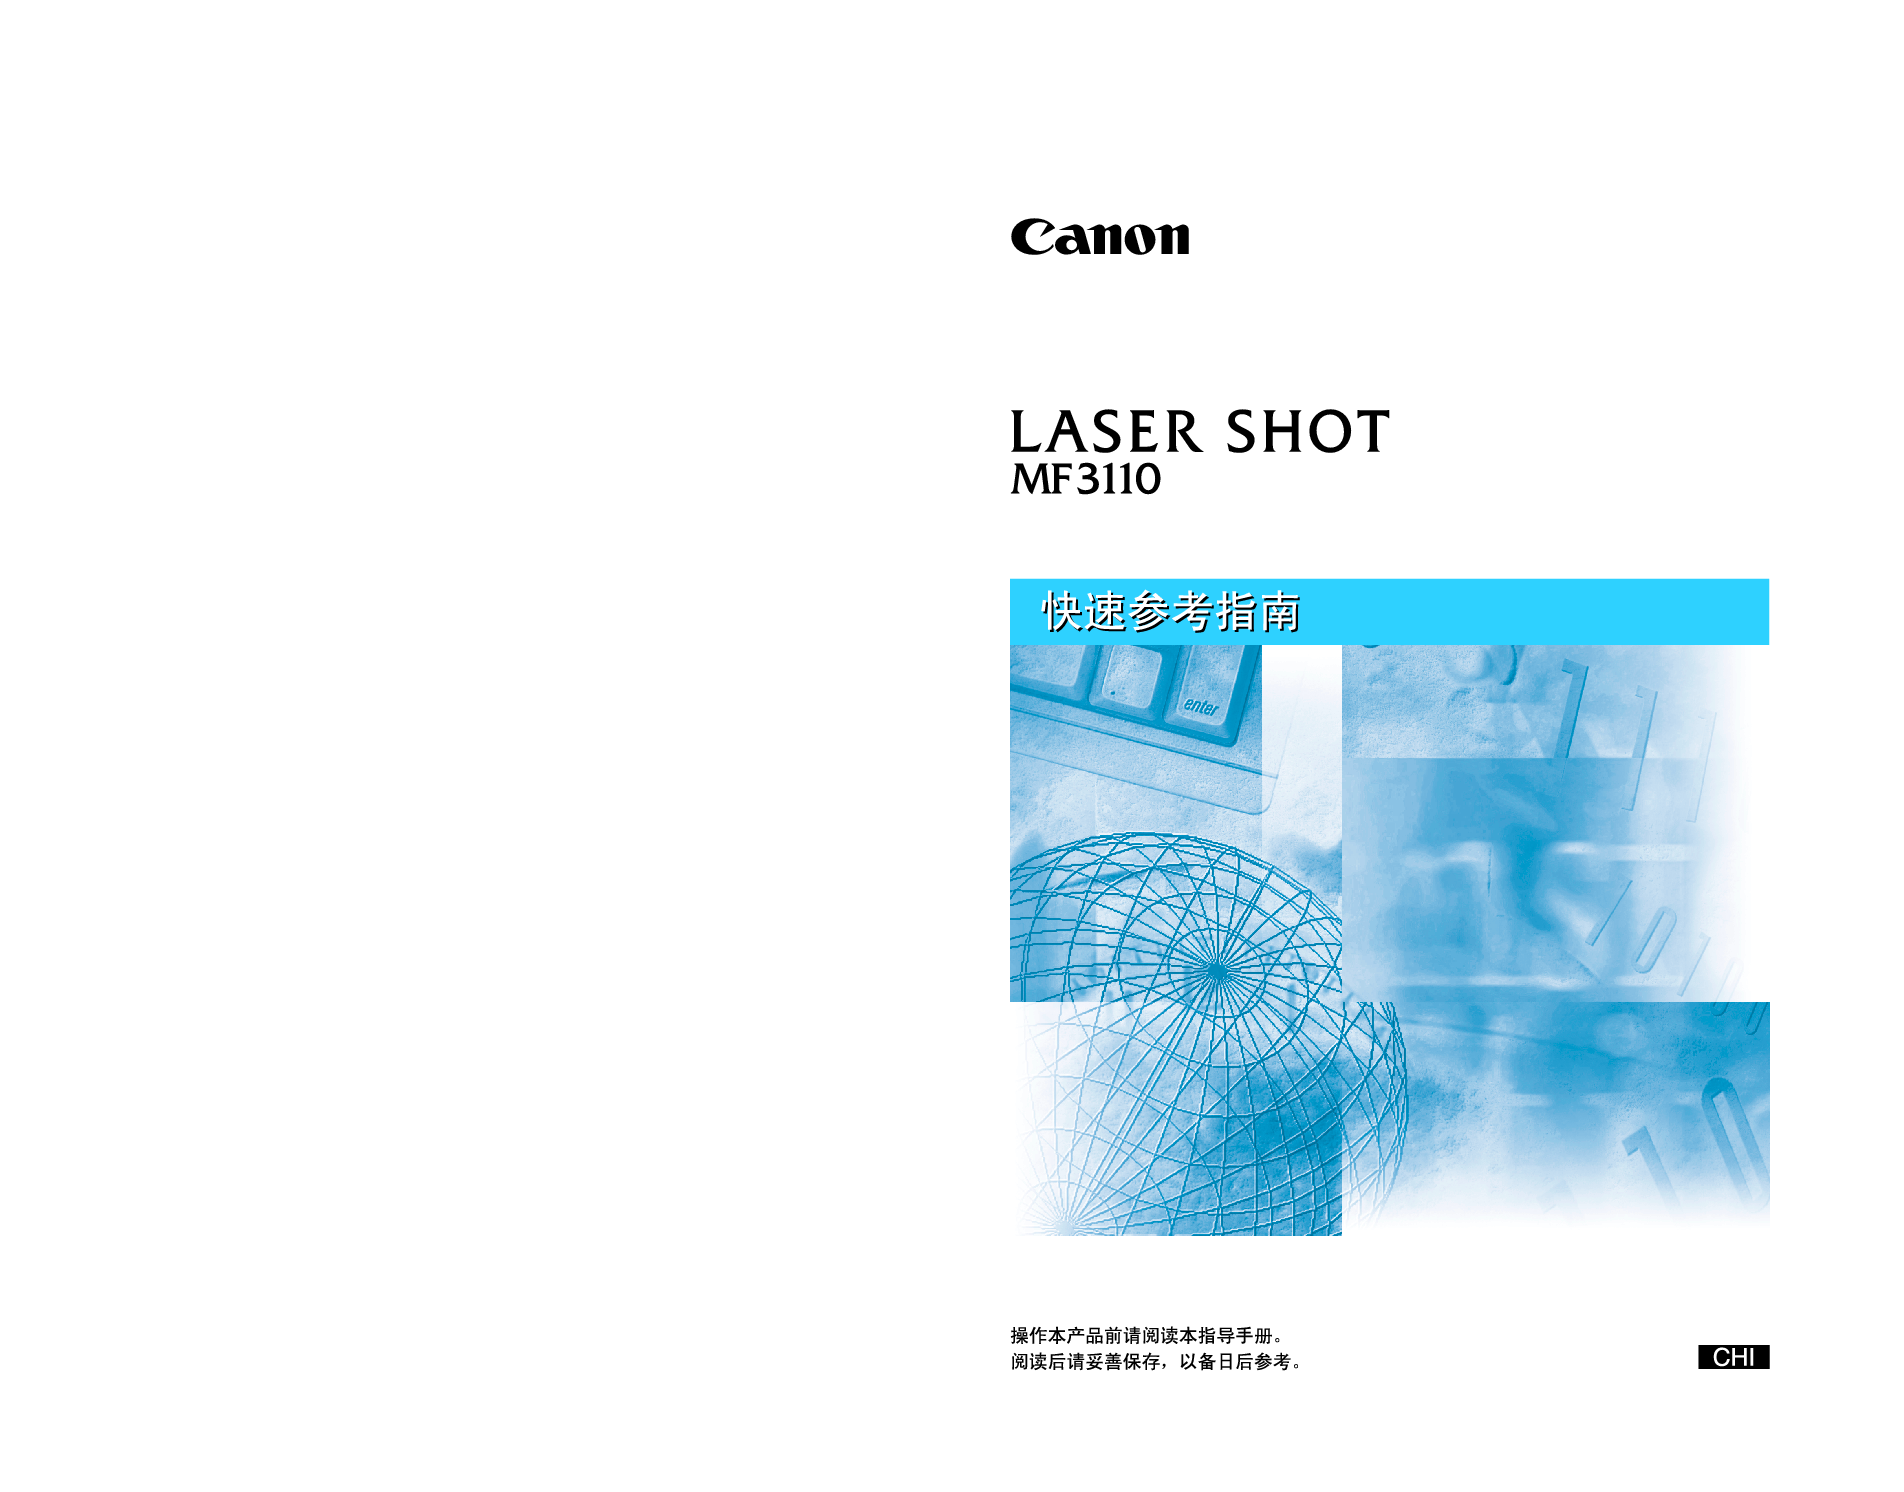 佳能 Canon LASER SHOT MF3110 快速参考指南 封面